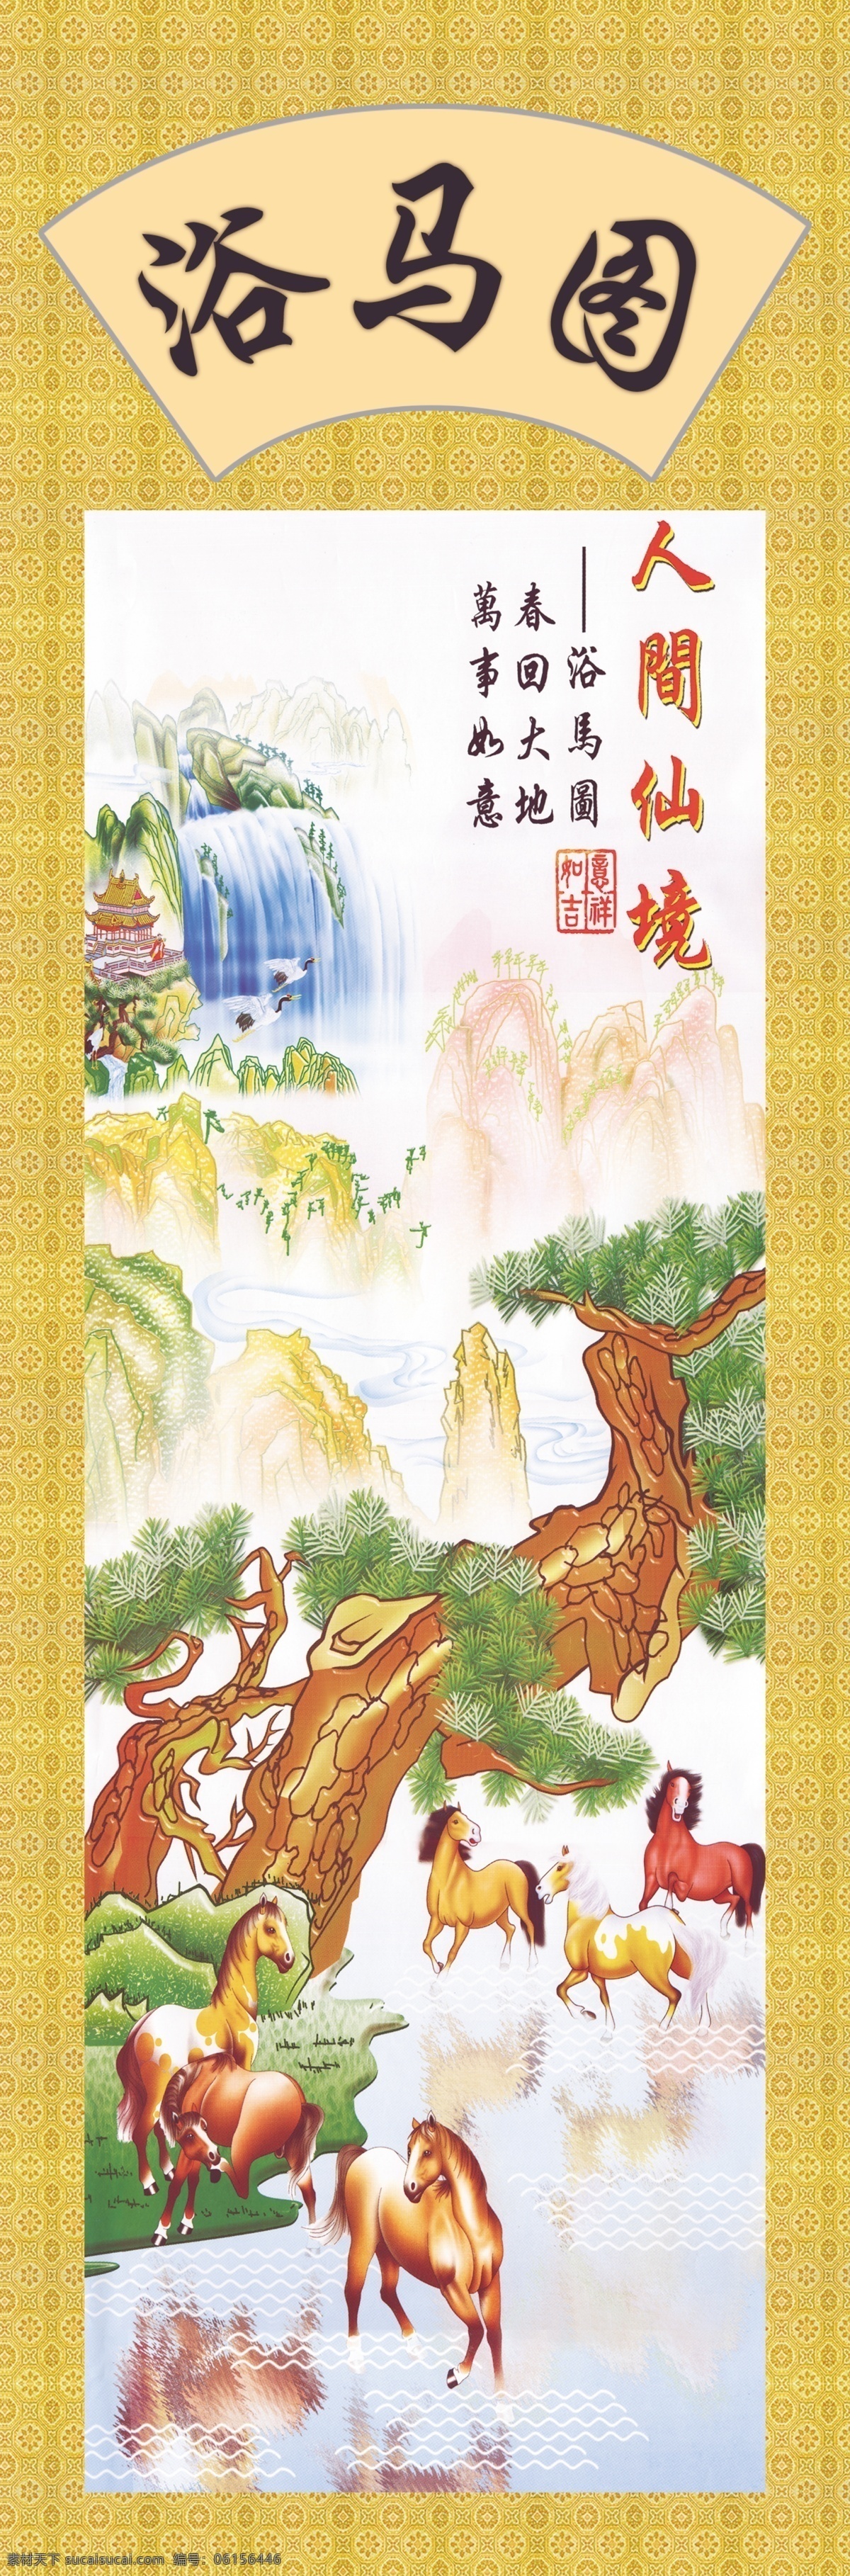 中国画 马 国画 水墨画 丹青 绘画艺术 传统绘画 油画 书画文字 文化艺术